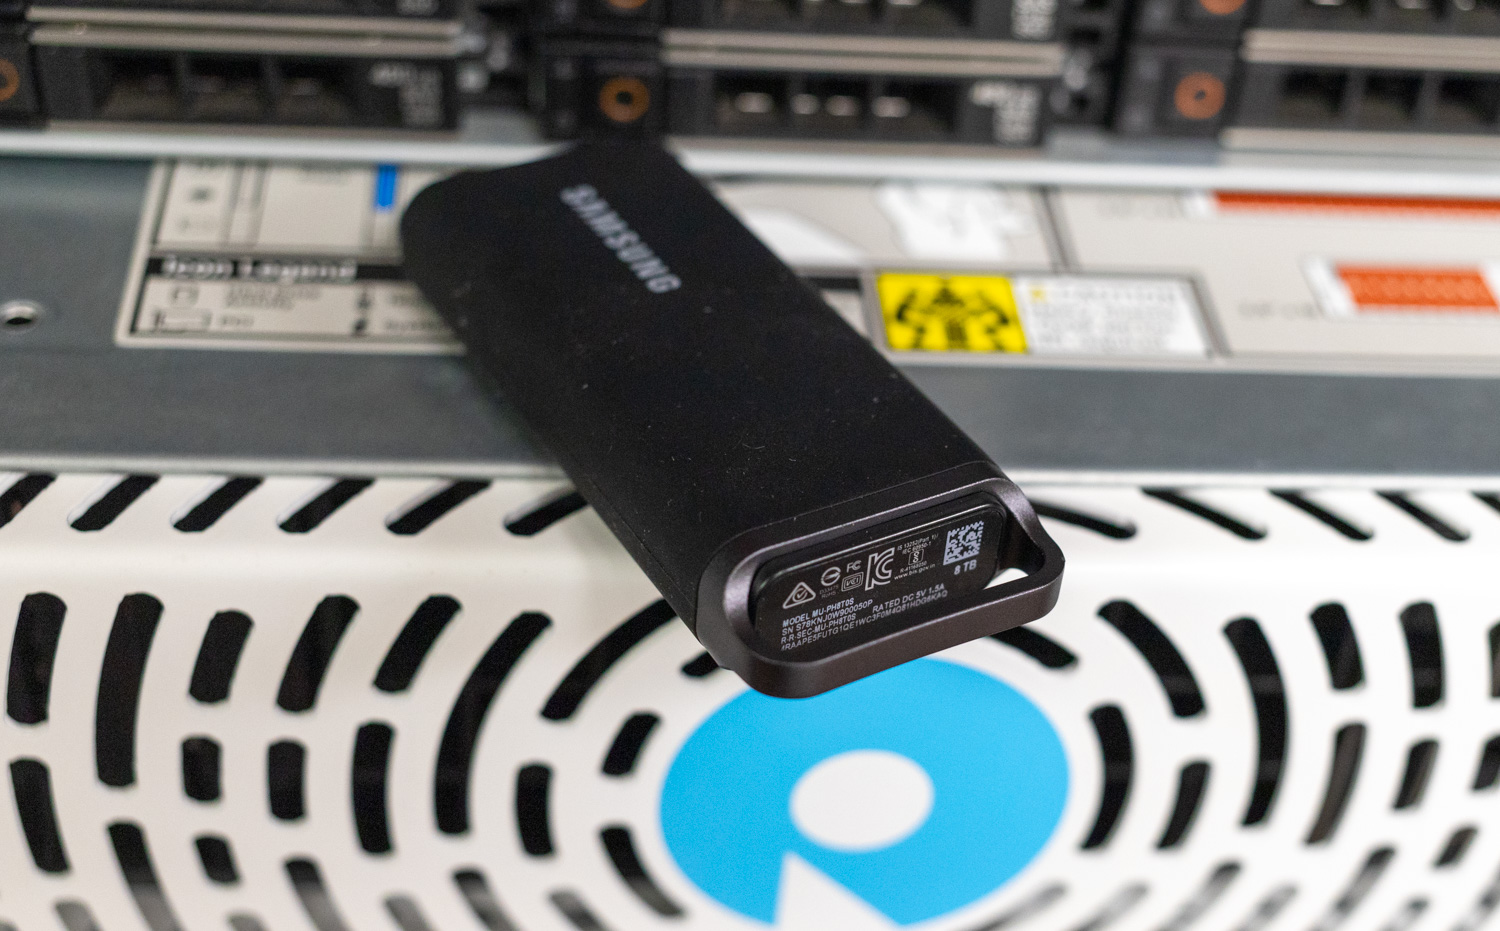 Probamos la SSD portátil Samsung T5 EVO: 8 TB de almacenamiento en un  increíble disco externo